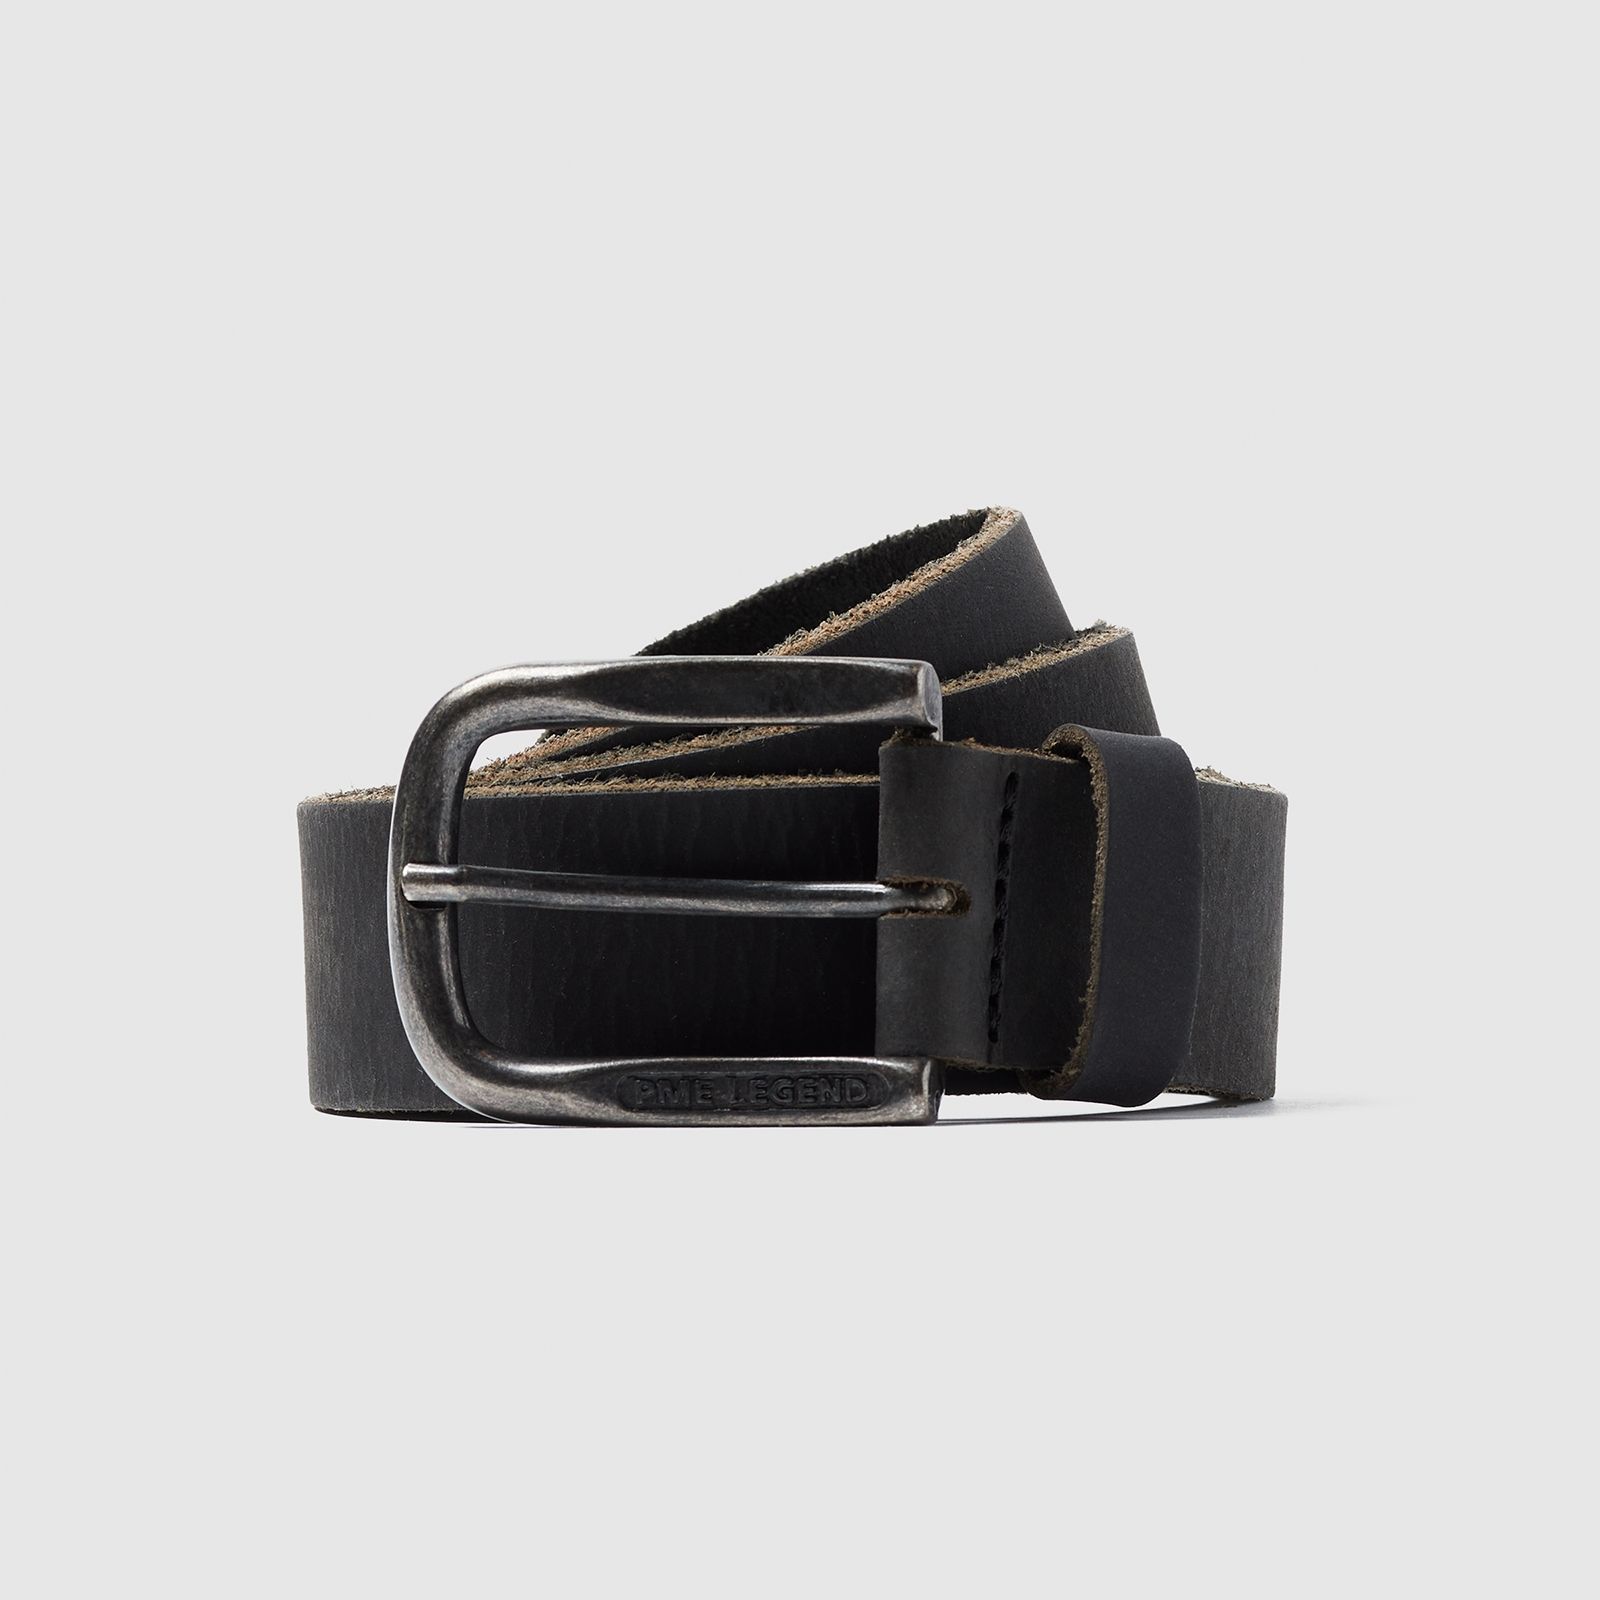 Pme Legend Belt Leather belt Black 2900140967011